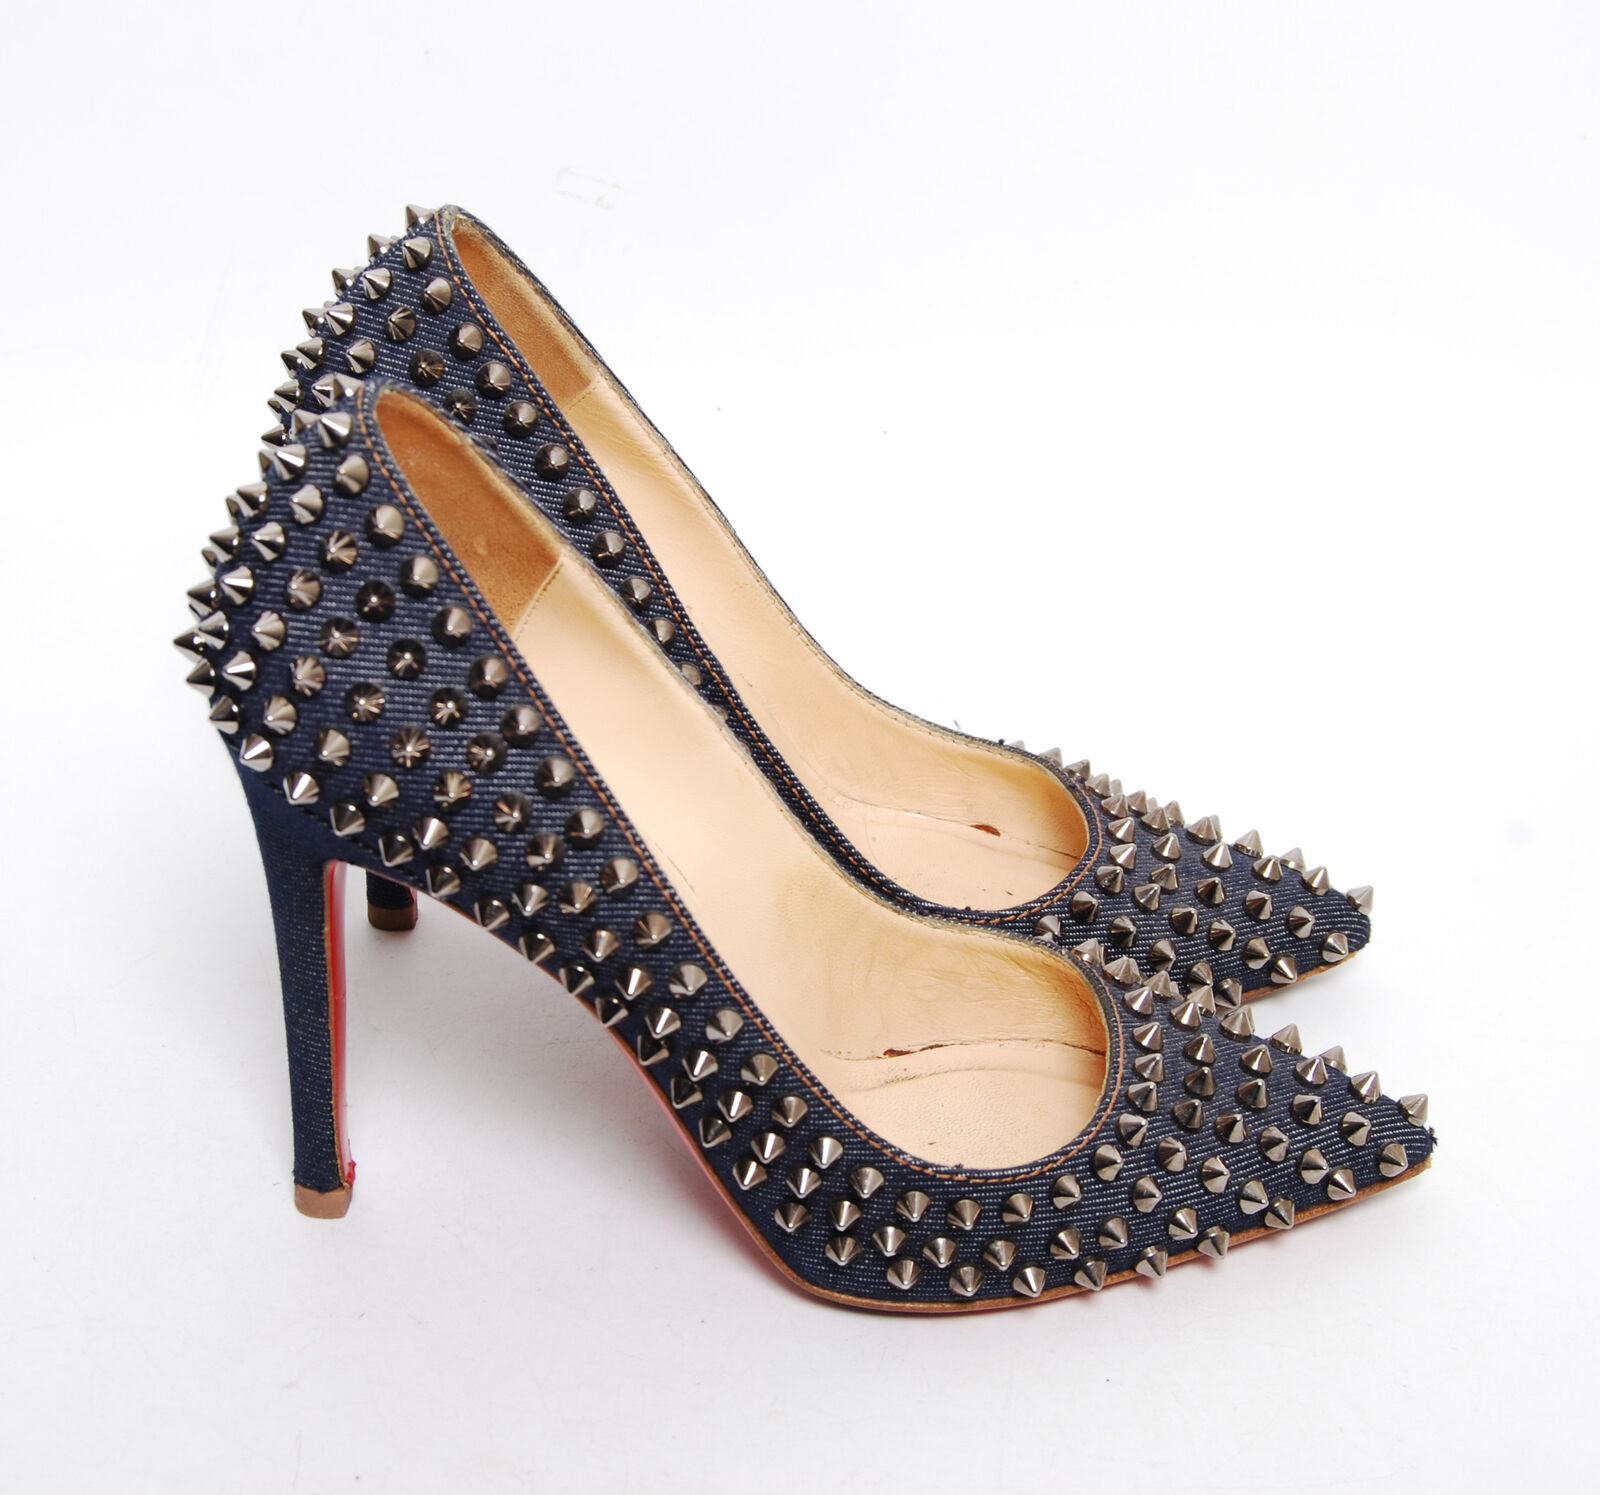 Louboutin Pumps Denim Follies Spikes High Heels Shoes EU 37.5 eBay